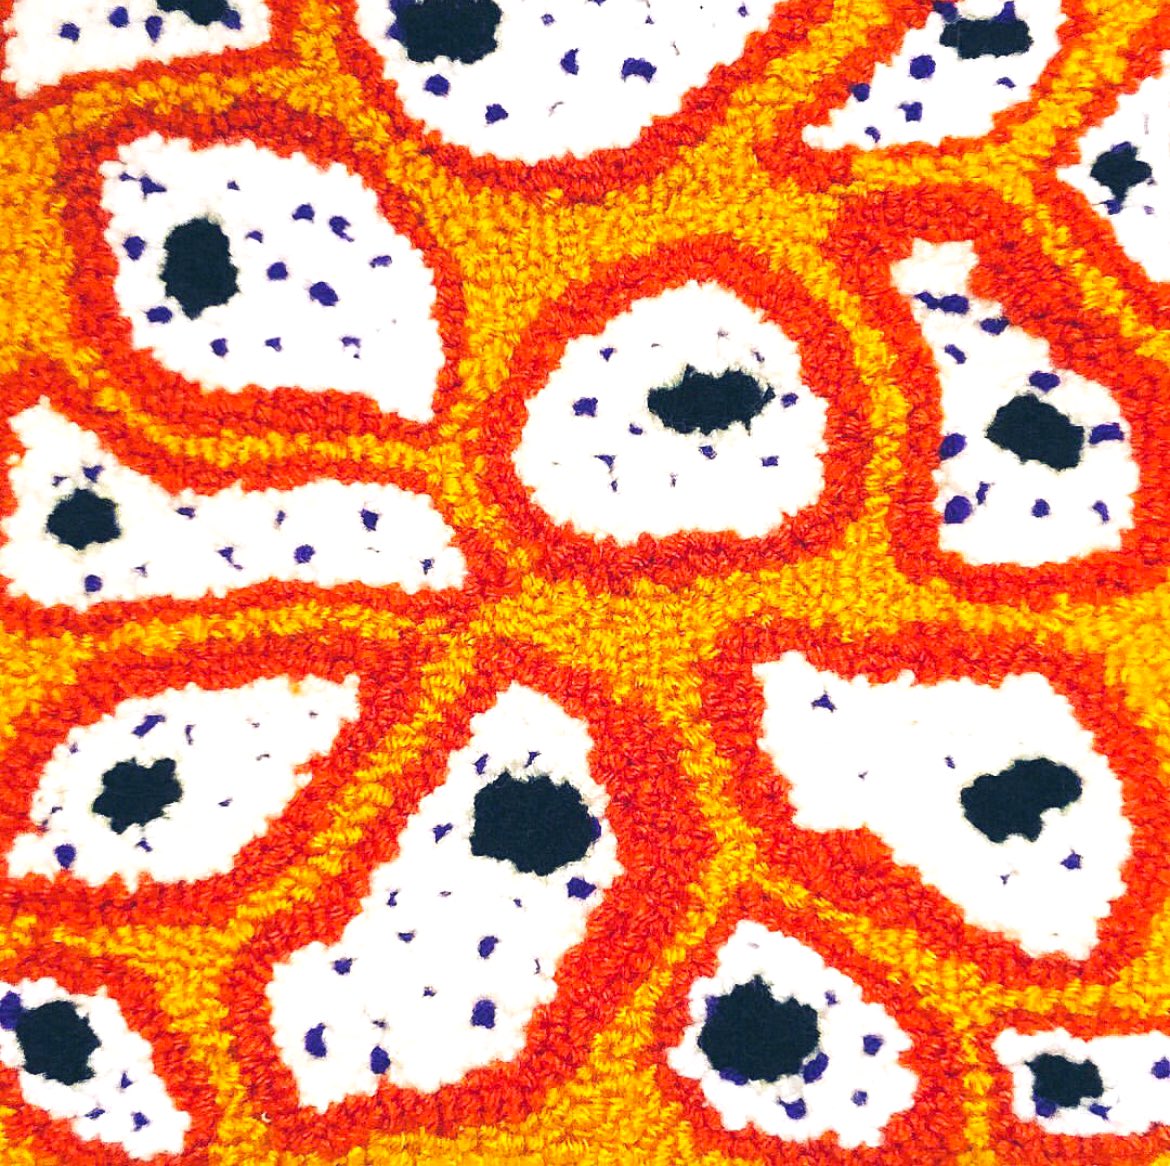 #madebyme cell study 🔬 punch needle on monk’s cloth using acrylic worsted weight yarn #workinprogress #oxfordpunchneedle #14mini #somethingnew #pathart #histology #microscopy #proudpathologist